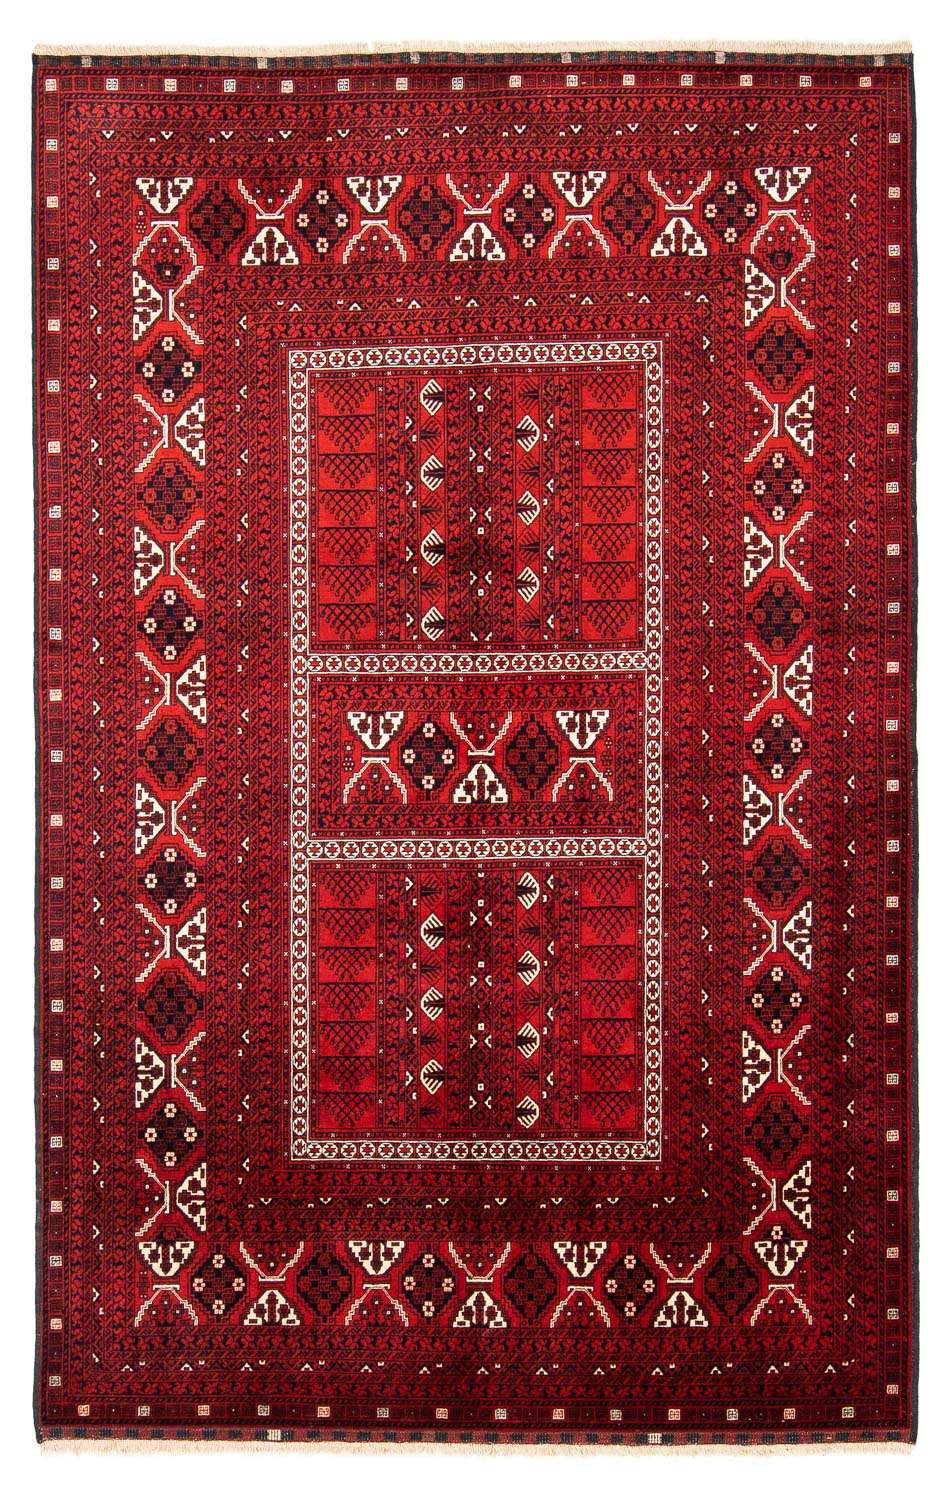 Dywan turkmeński - 243 x 160 cm - ciemna czerwień